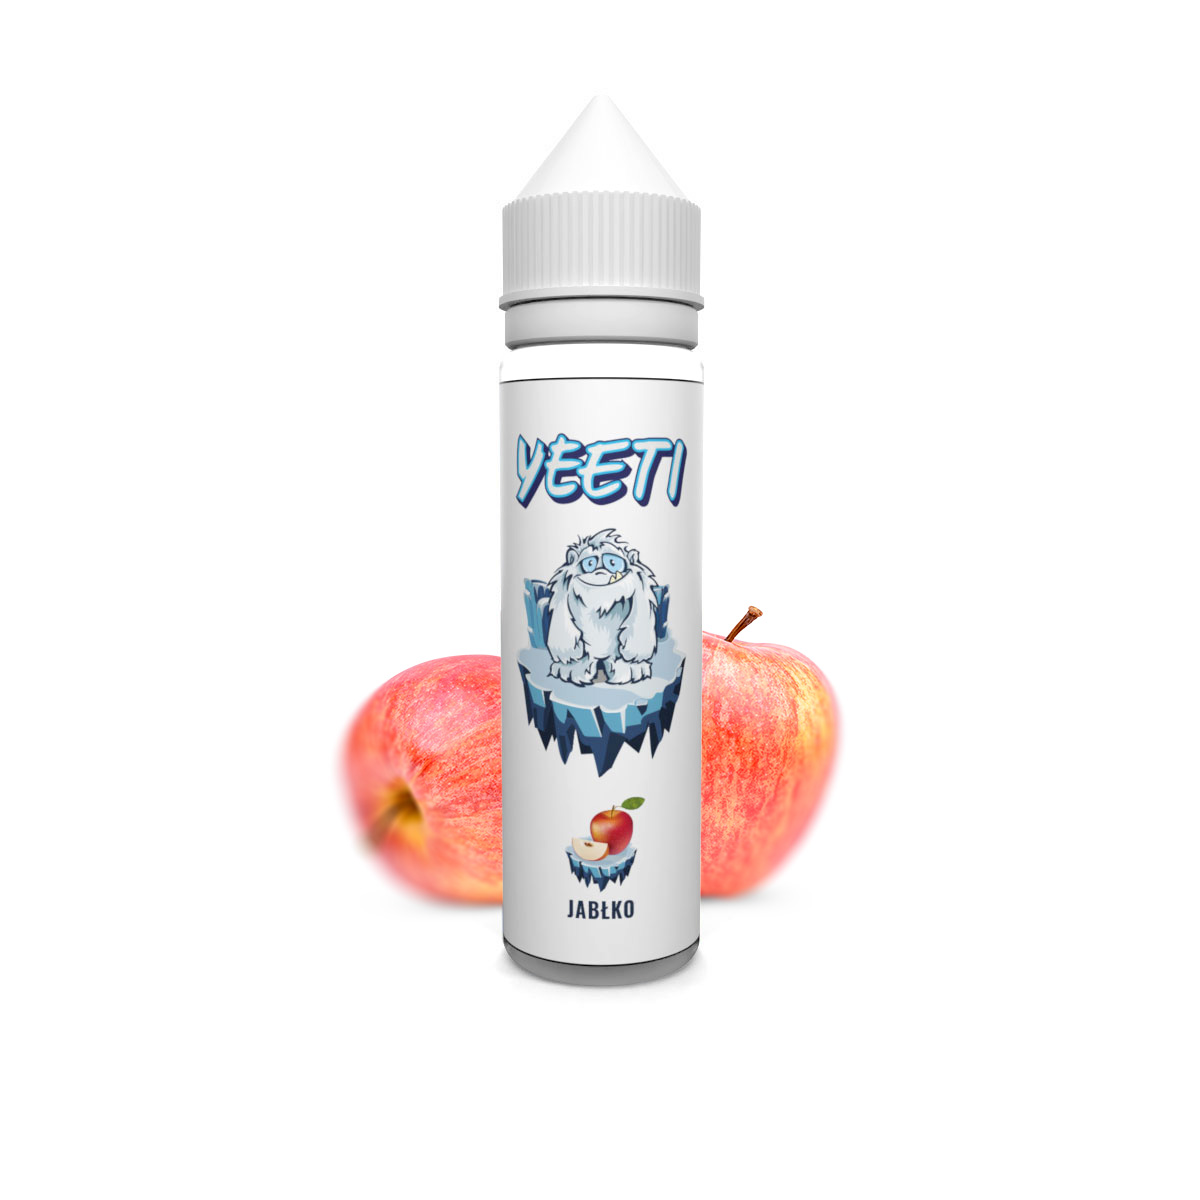 Yeeti – Jabłko